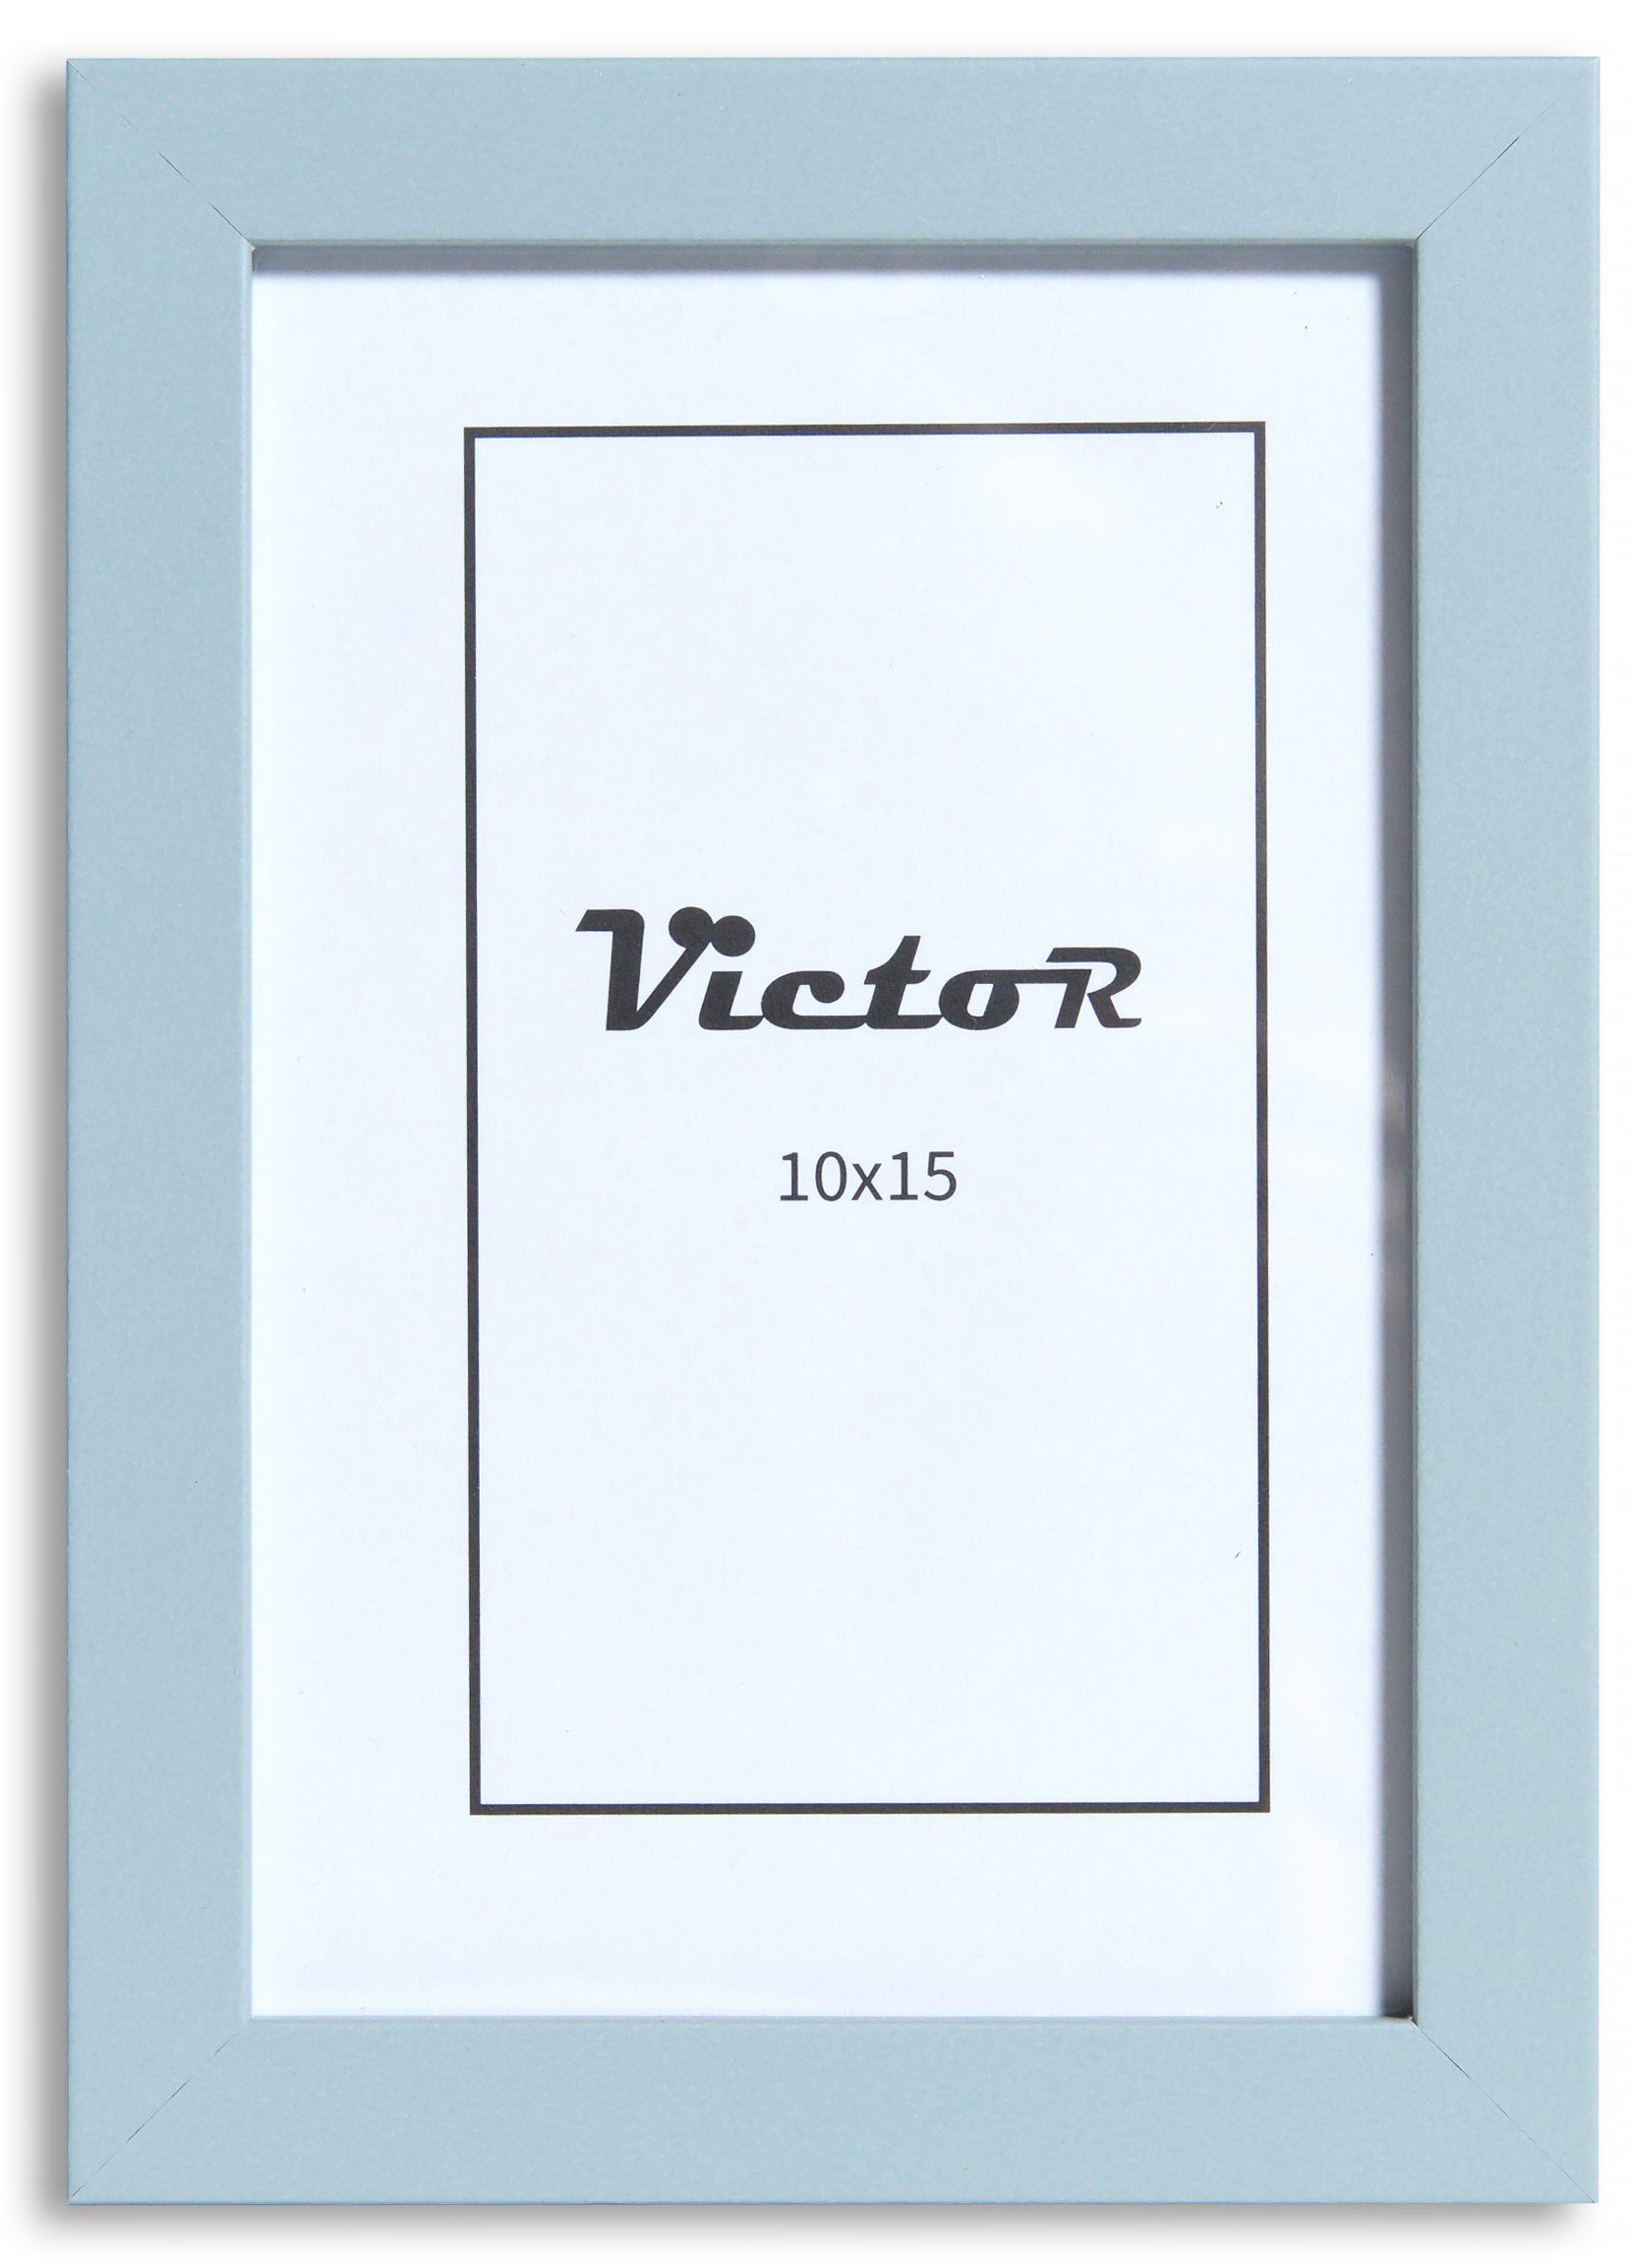 Victor (Zenith) Bilderrahmen Klee, 10x15 cm, in blau, Holzrahmen mit schmaler Leiste